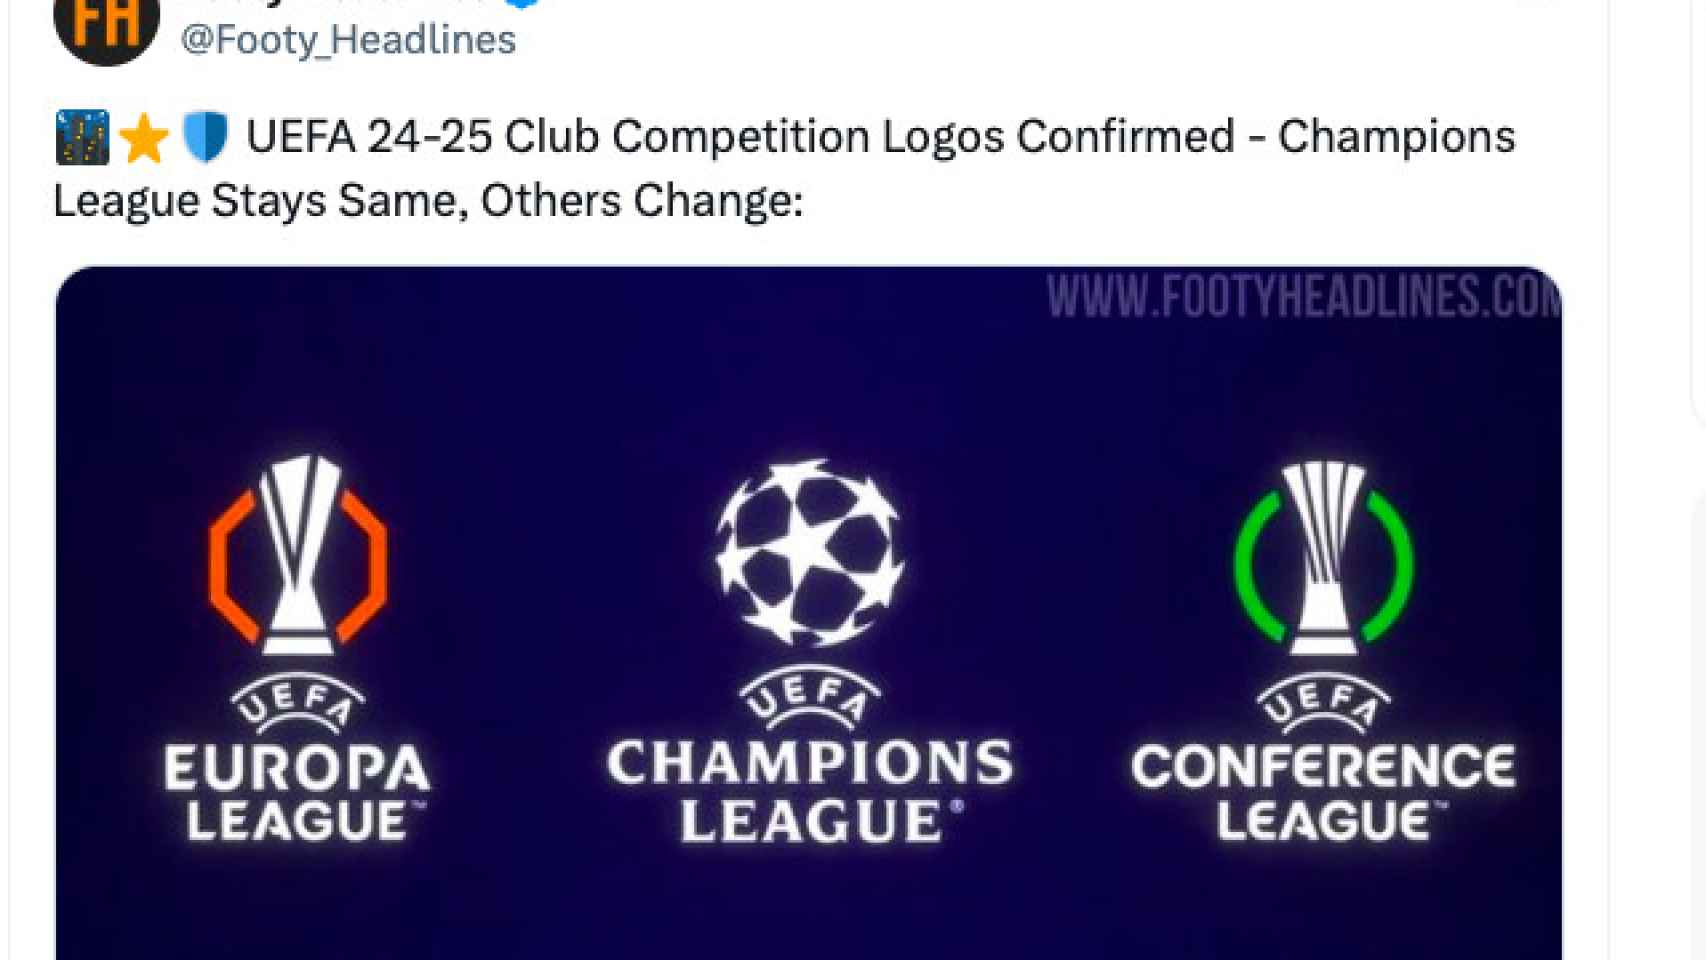 Logotipos de las tres competiciones de la UEFA